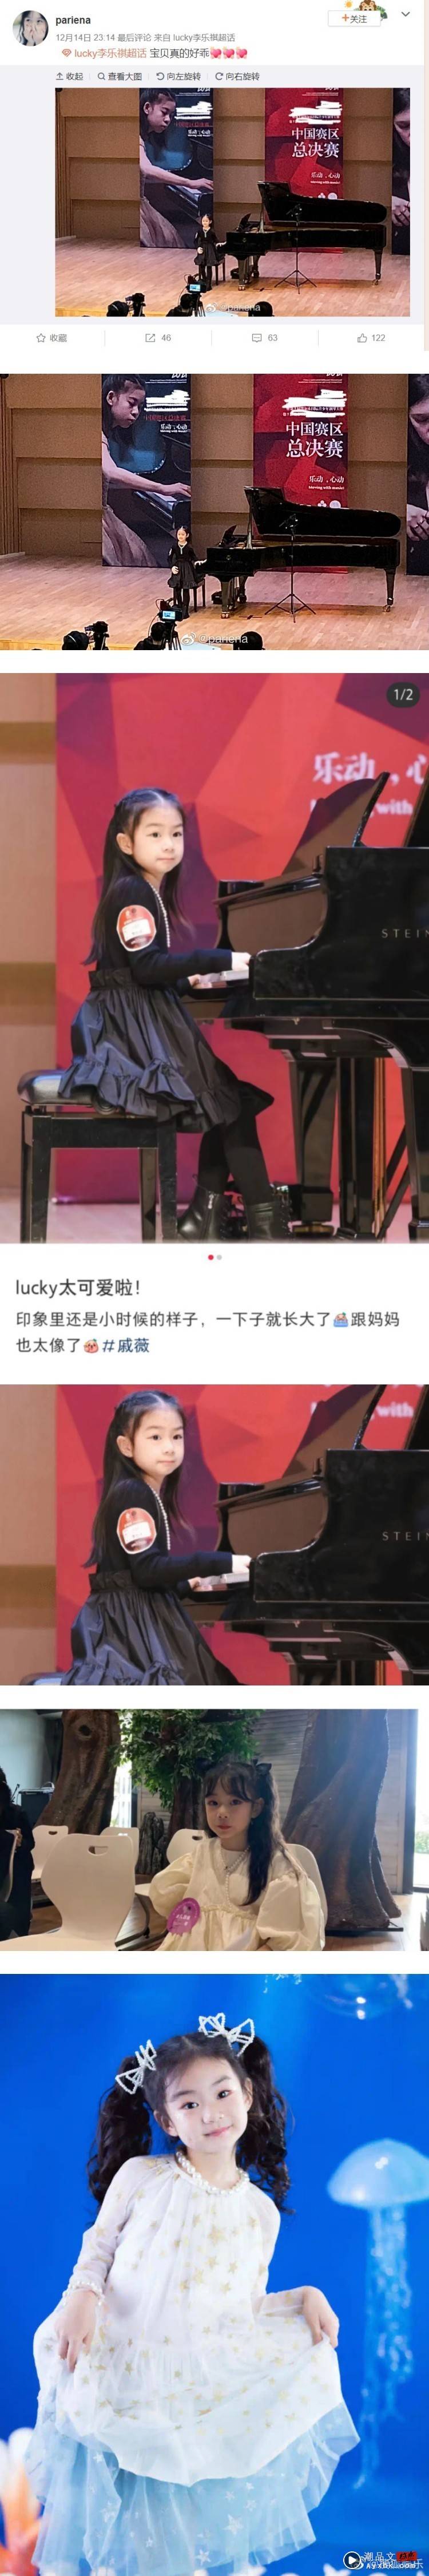 李承铉、戚薇6岁女儿参加钢琴比赛被偶遇！ 浓妆模样曝光...是成熟的小公主啊 娱乐资讯 图2张